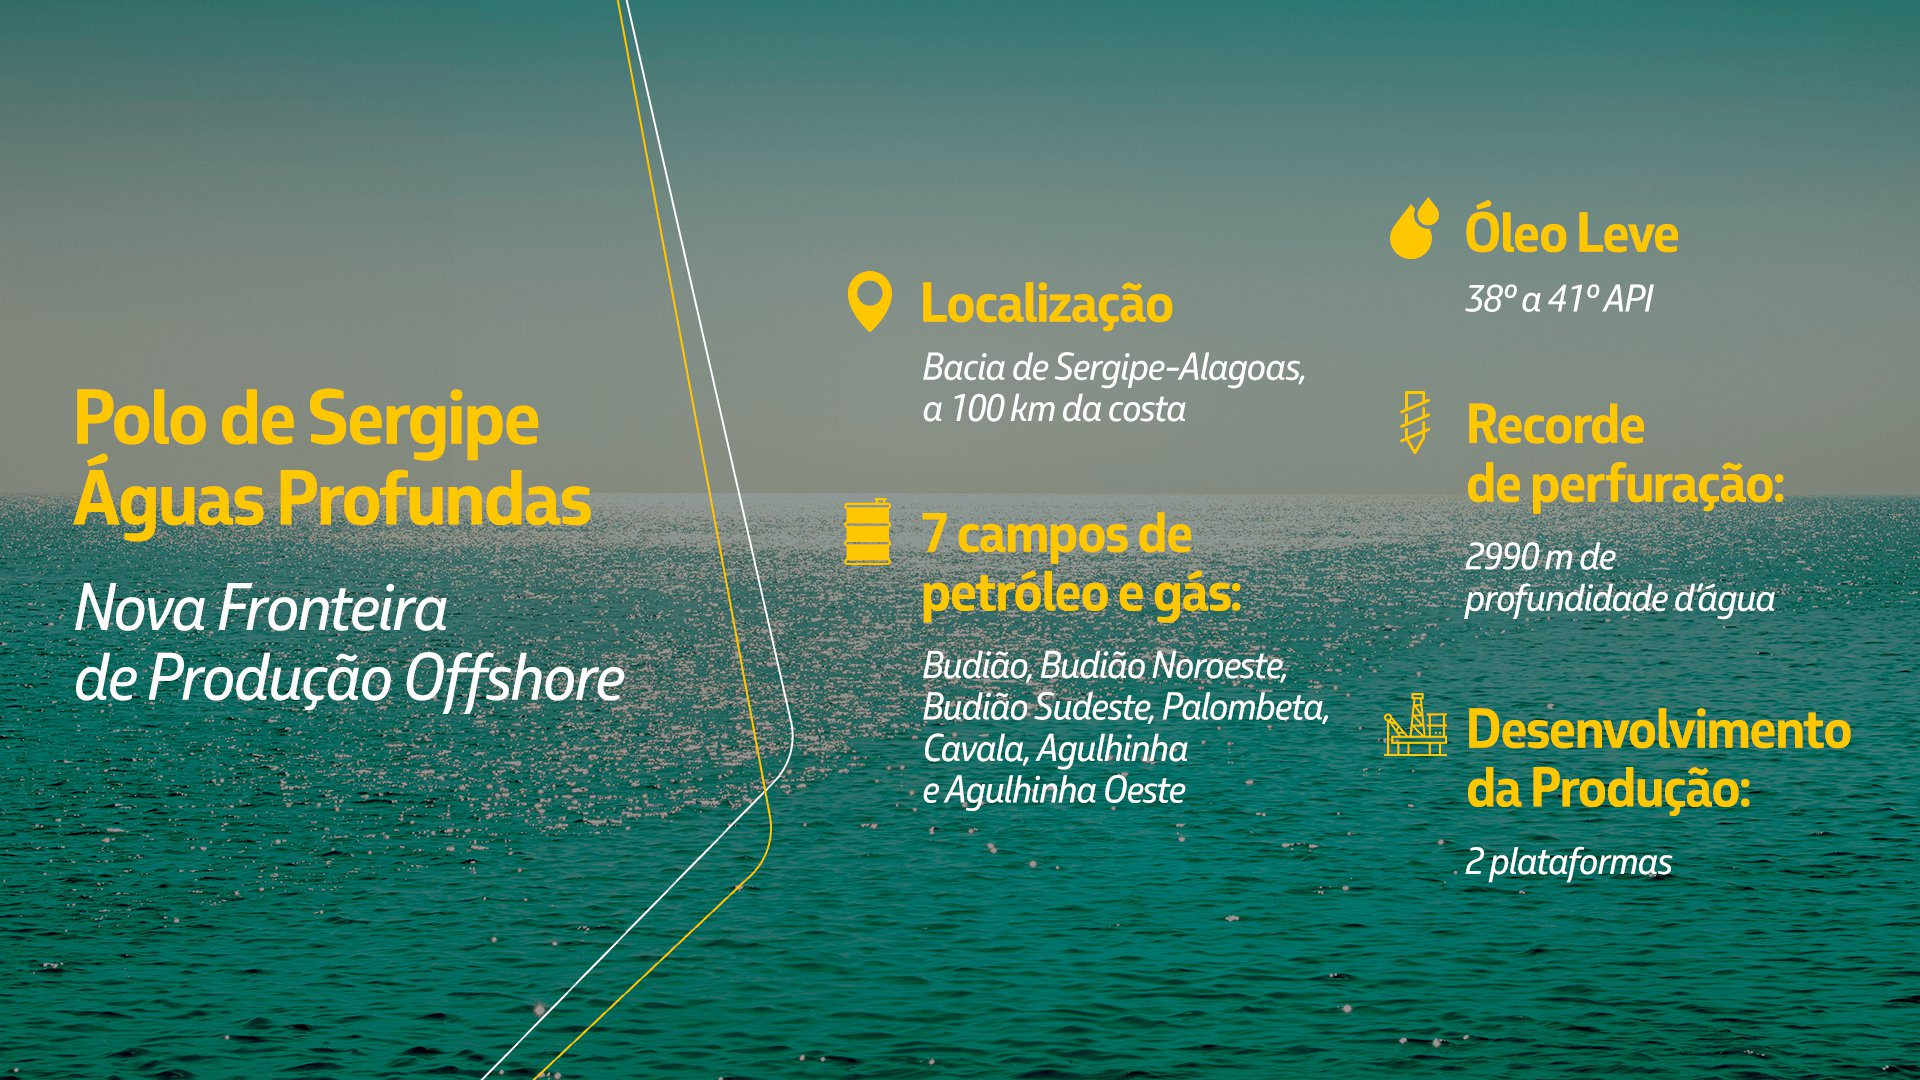 Principais características do Polo de Sergipe Águas Profundas, como localização e nomes dos campos.